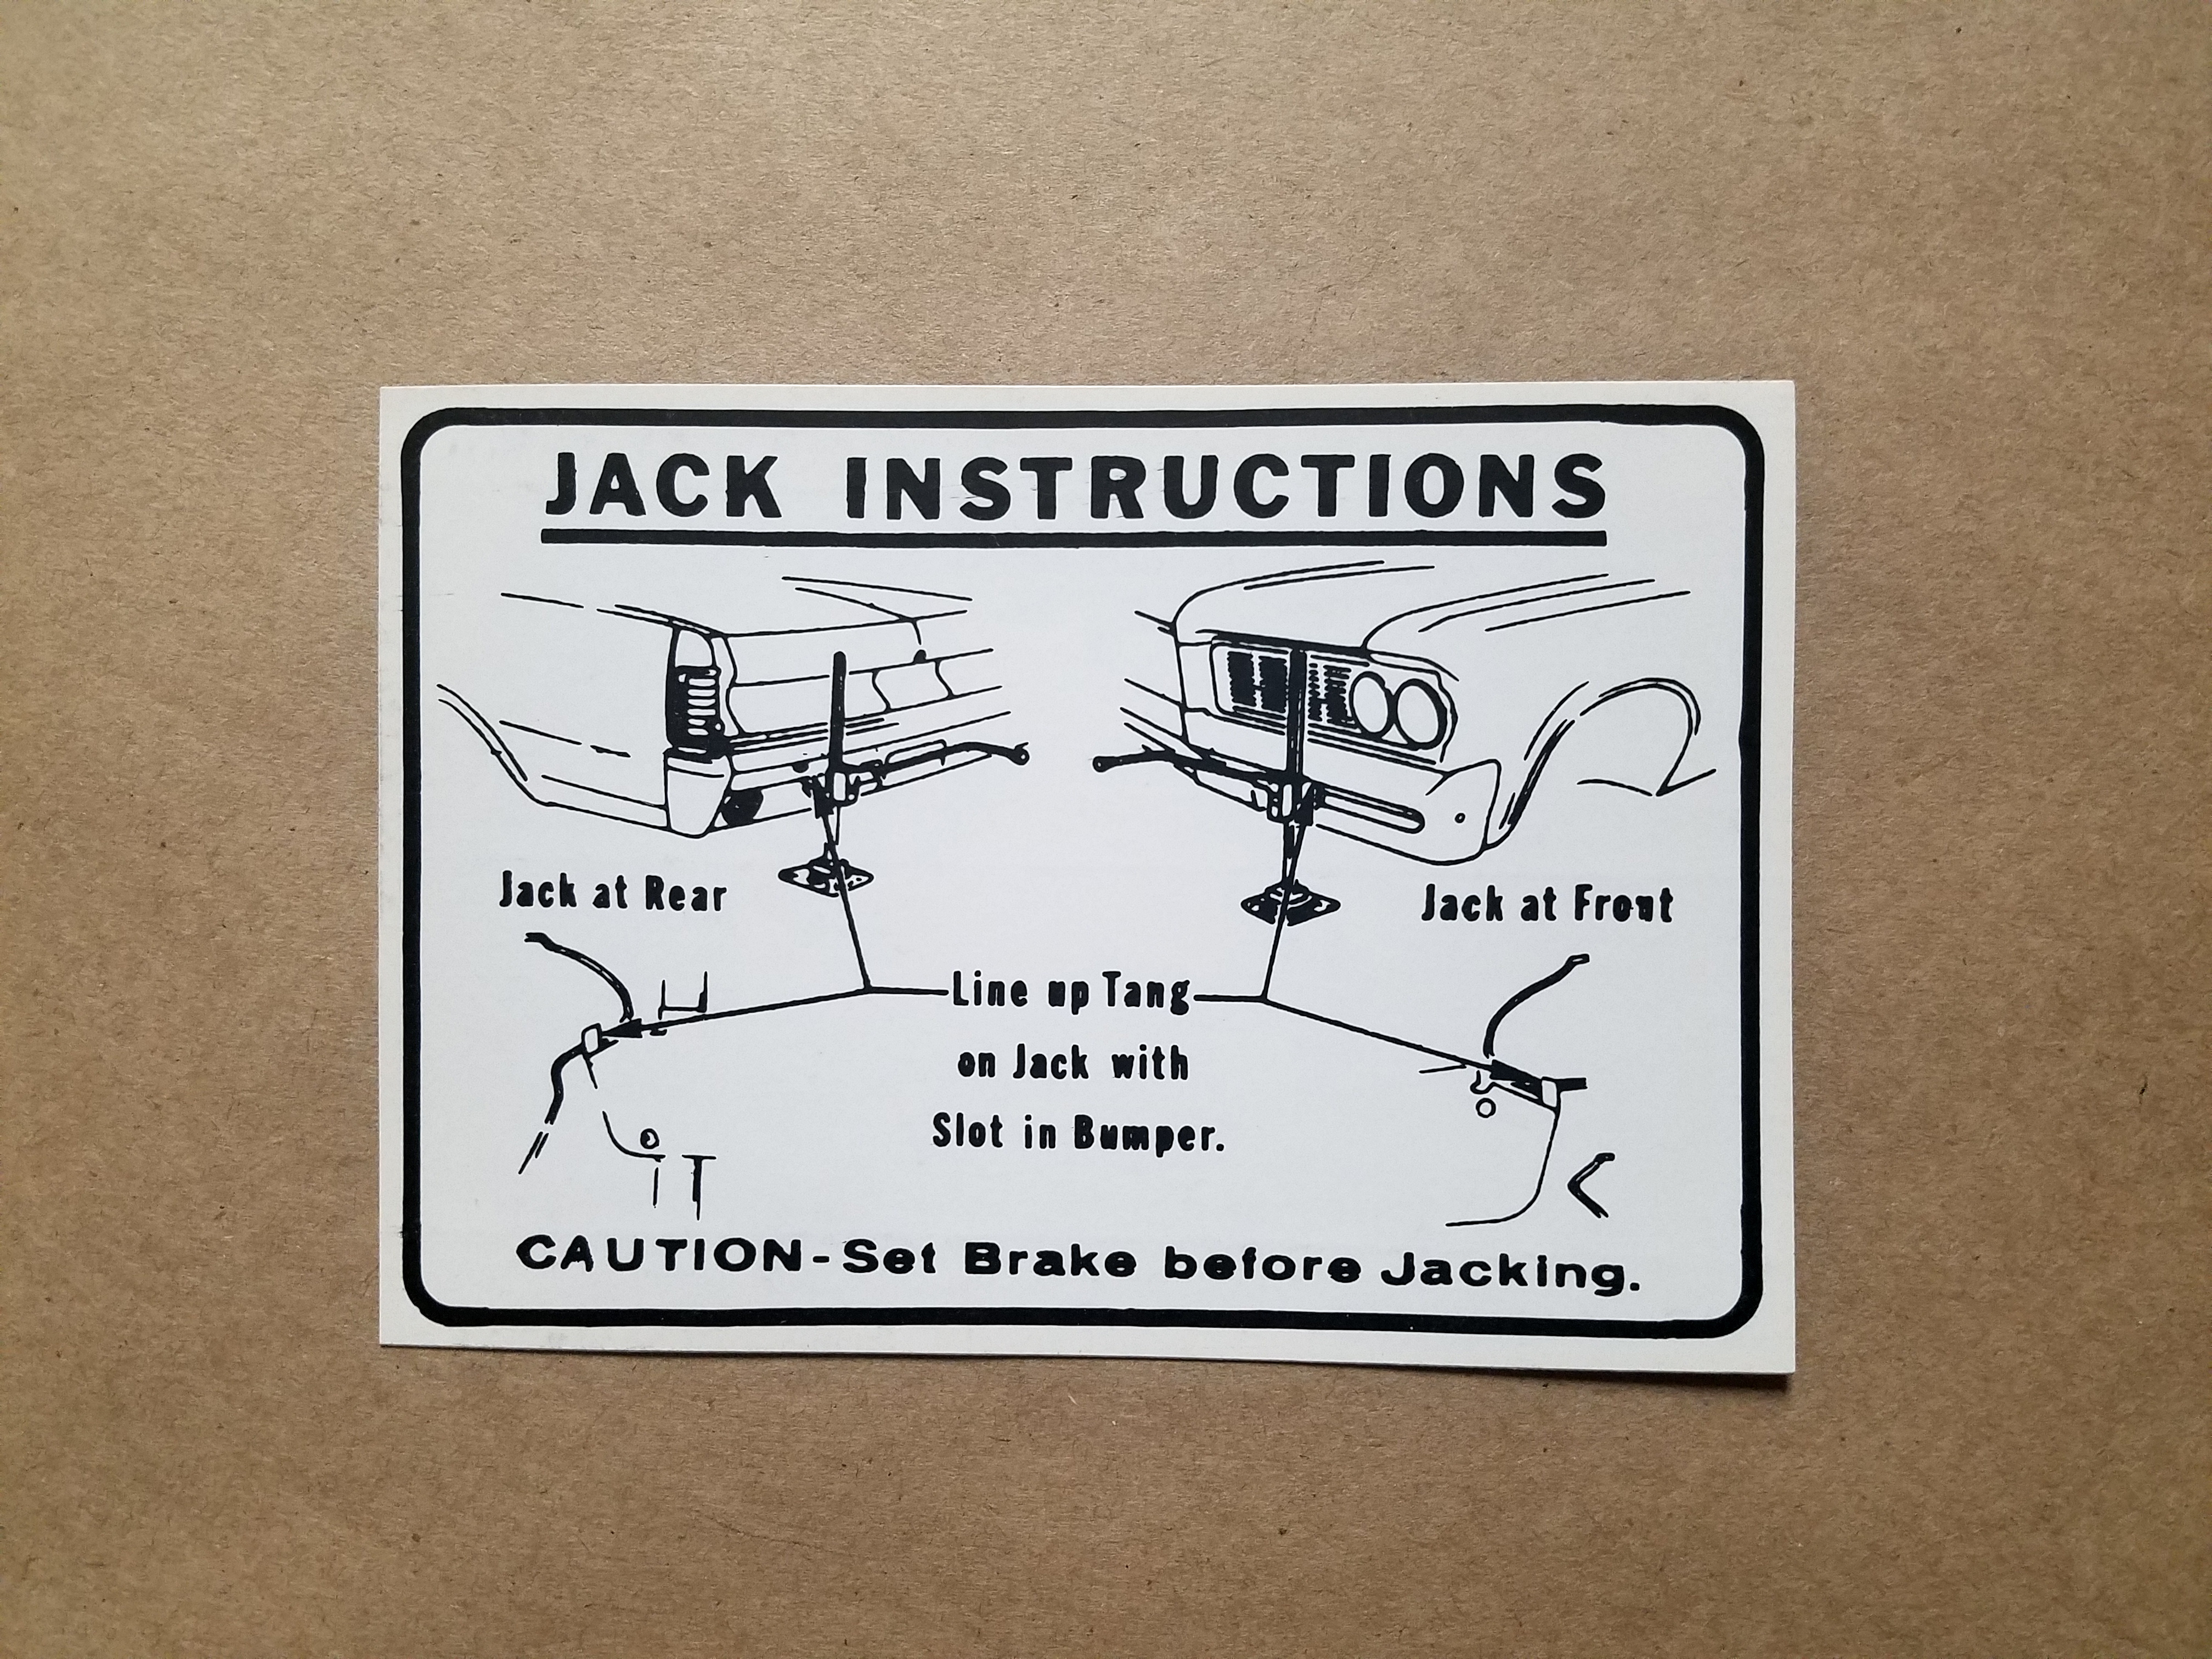 1964 Jack Instruction A body